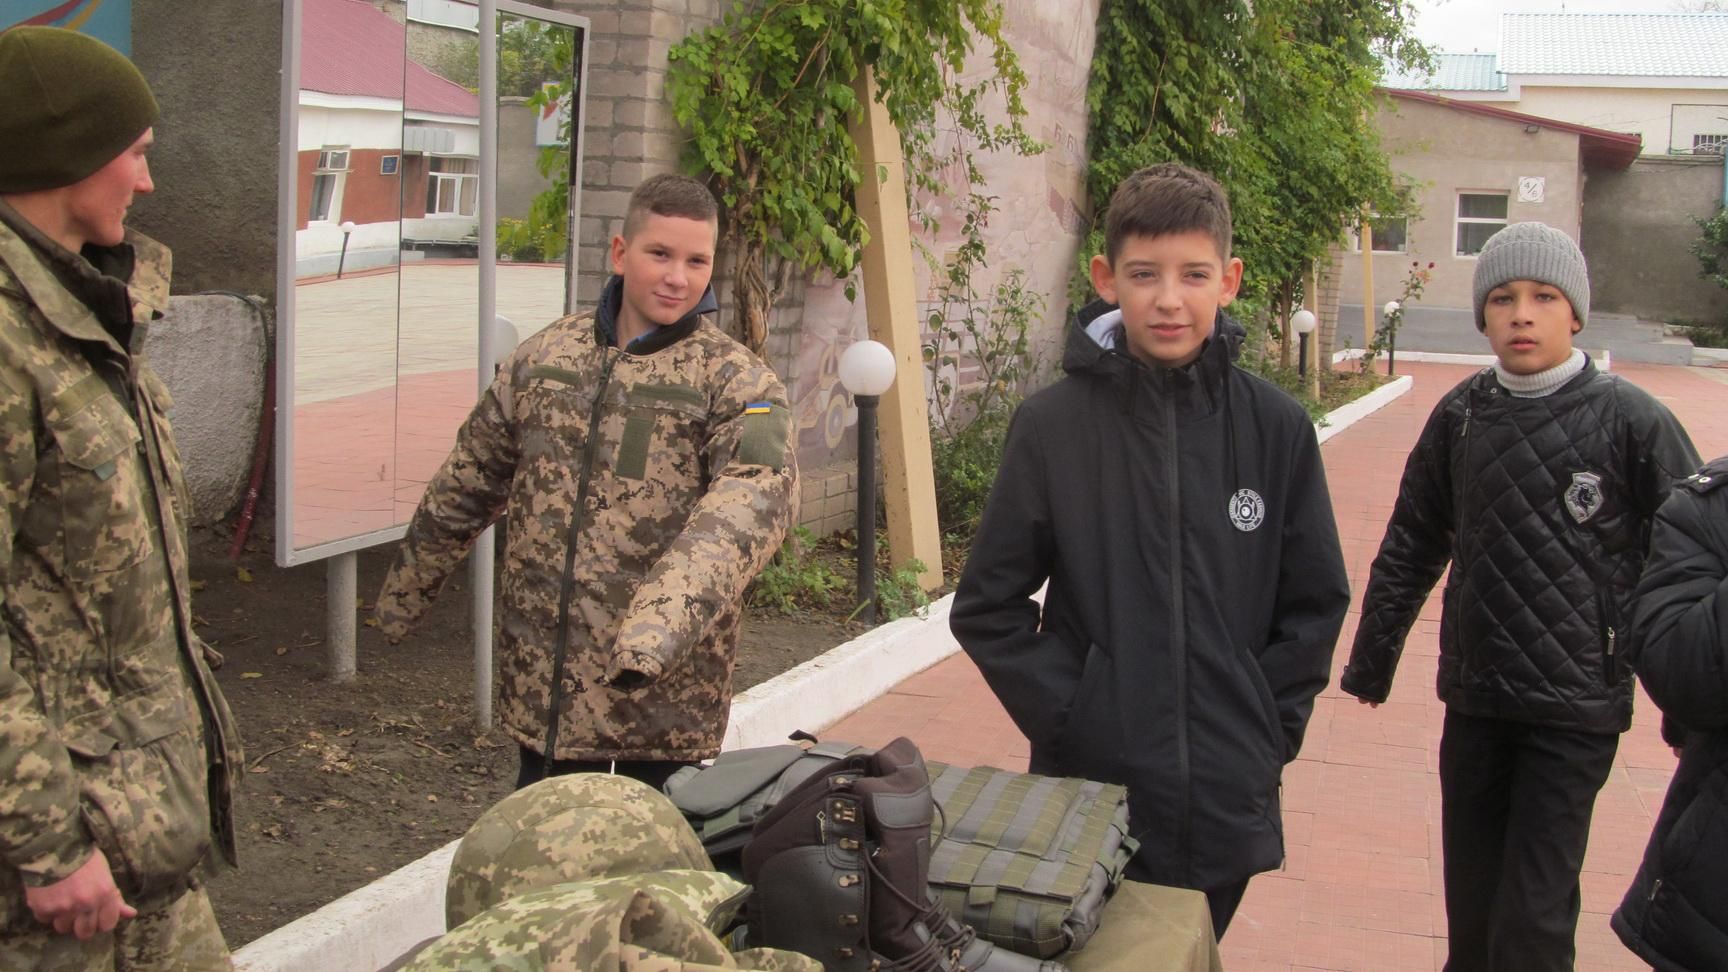 Курьезы призыва в армию: 12-летнему школьнику принесли повестку из военкомата в Киеве